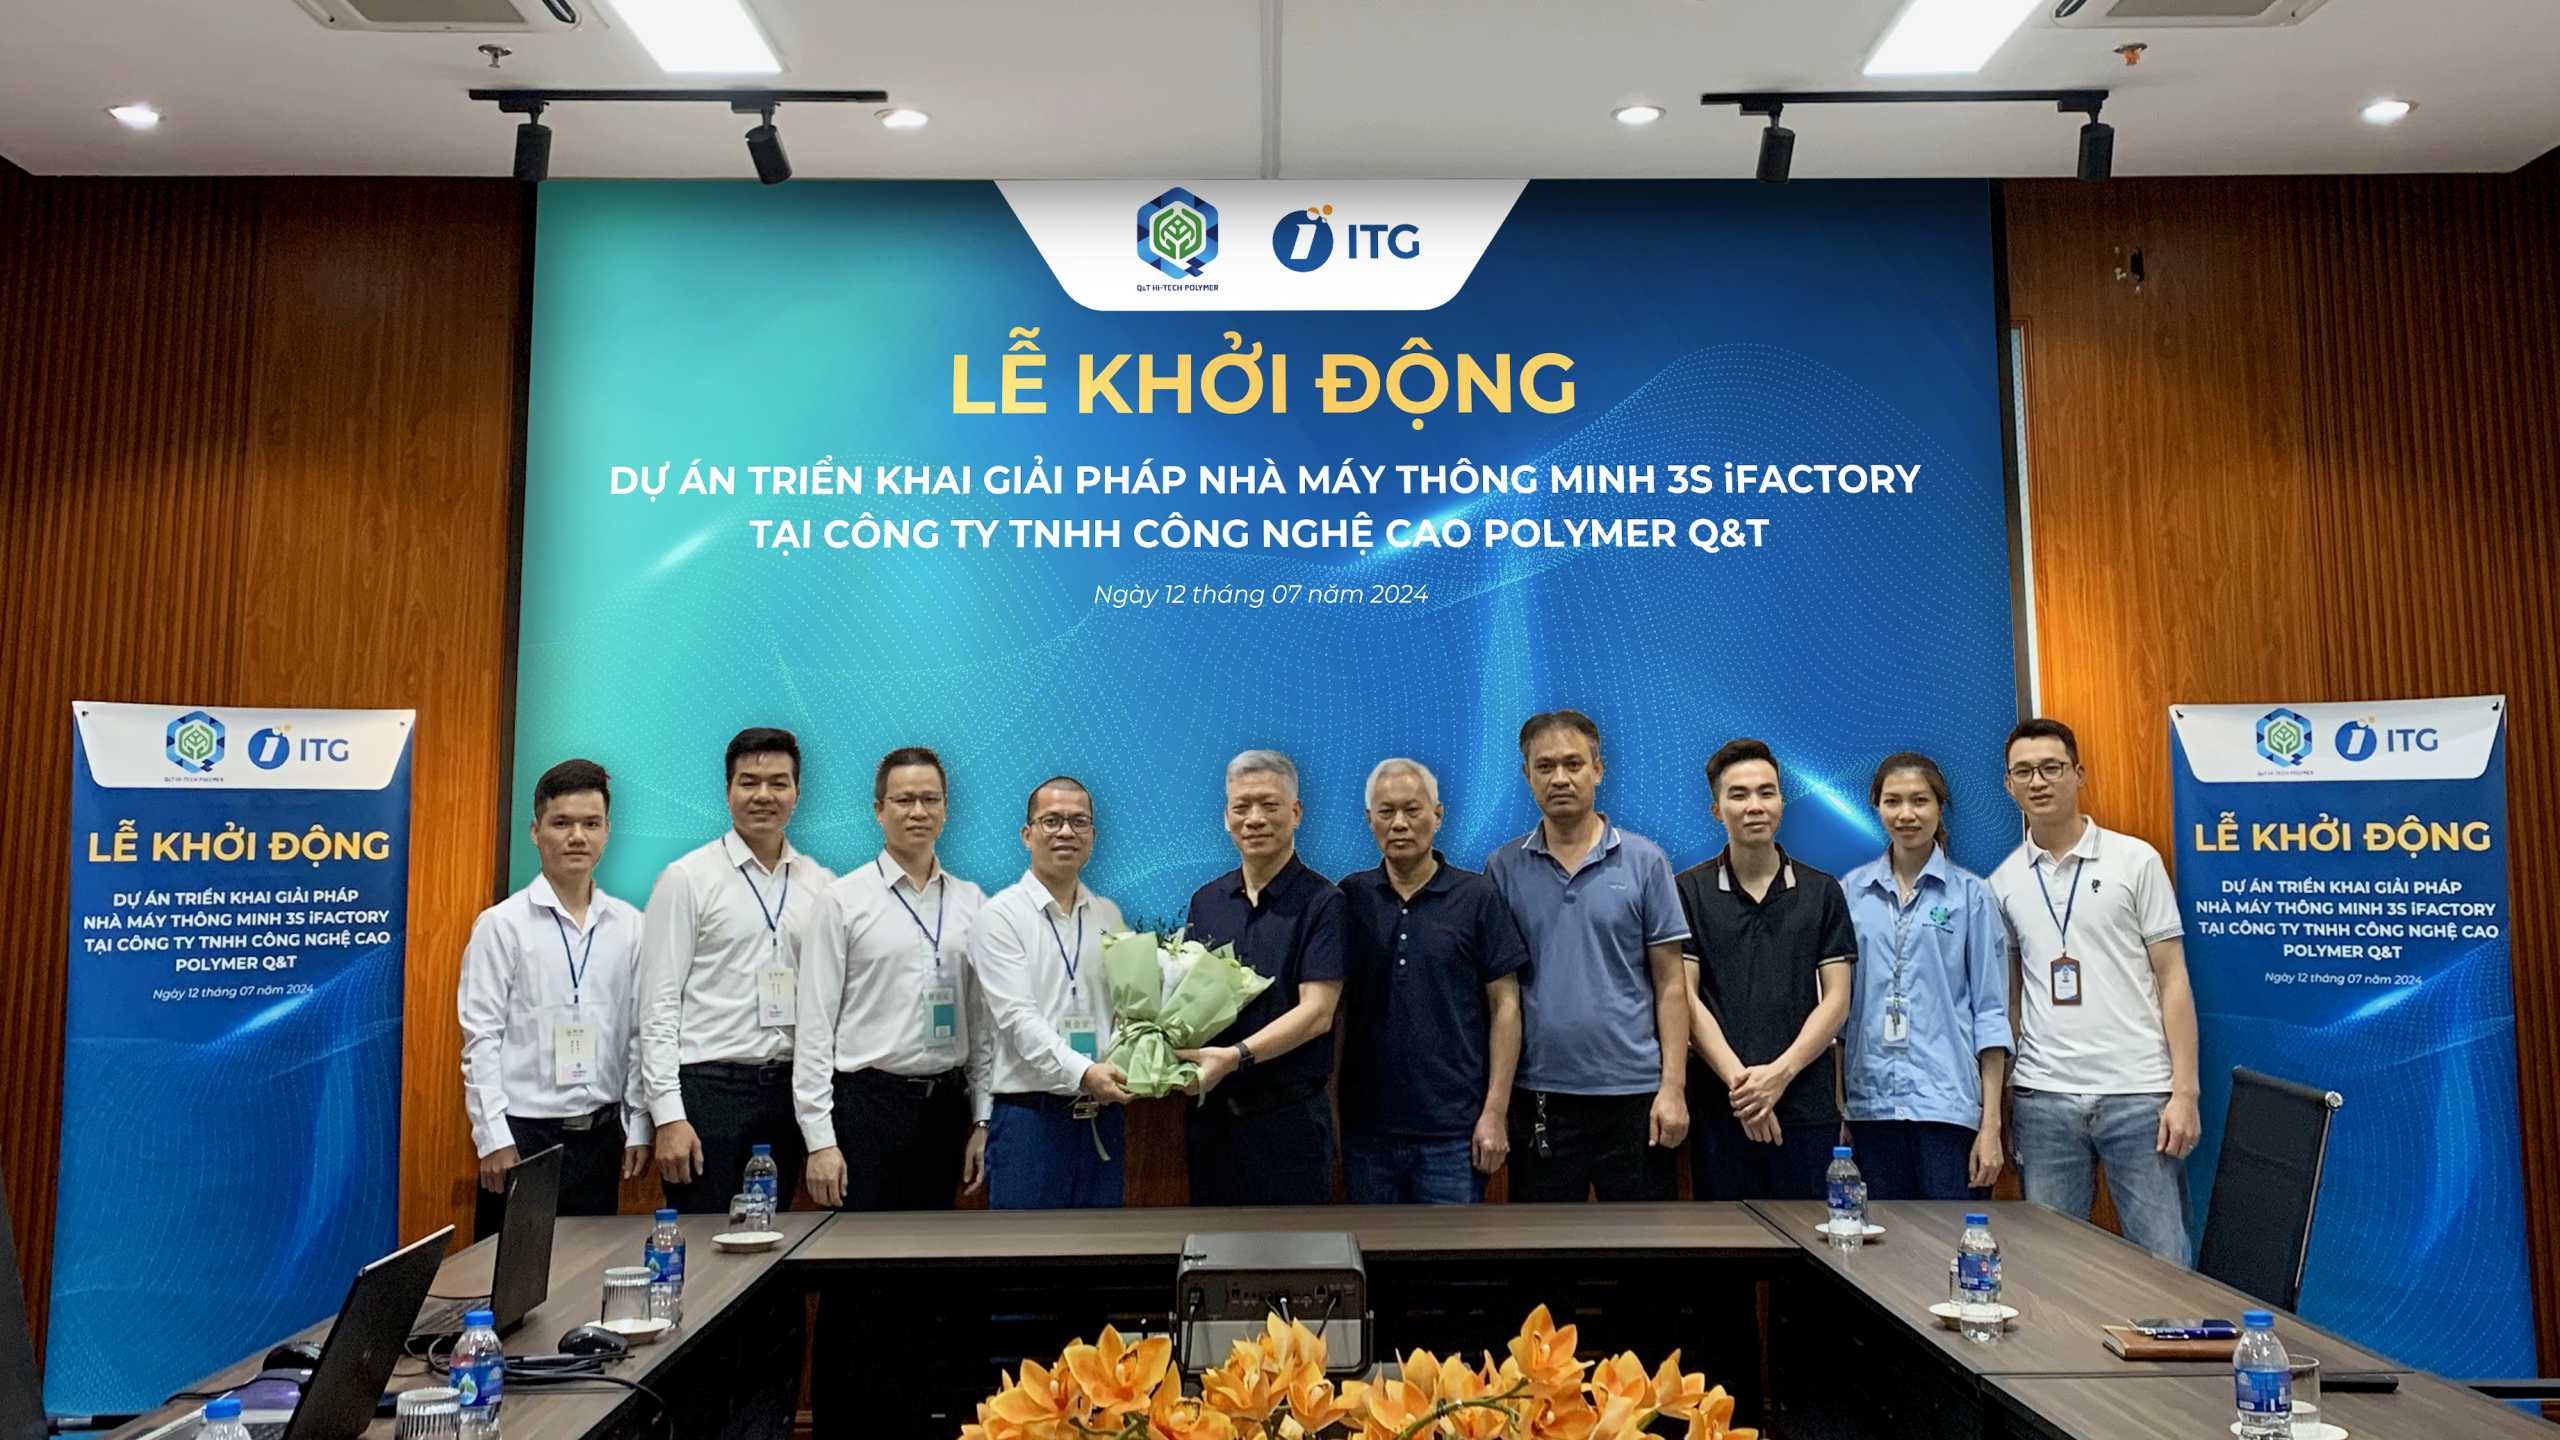 Kickoff dự án triển khai phần mềm 3S iFACTORY tại Công ty TNHH công nghệ cao Polymer Q&T – Nhà máy hiện đại nhất thế giới trong lĩnh vực Polymer